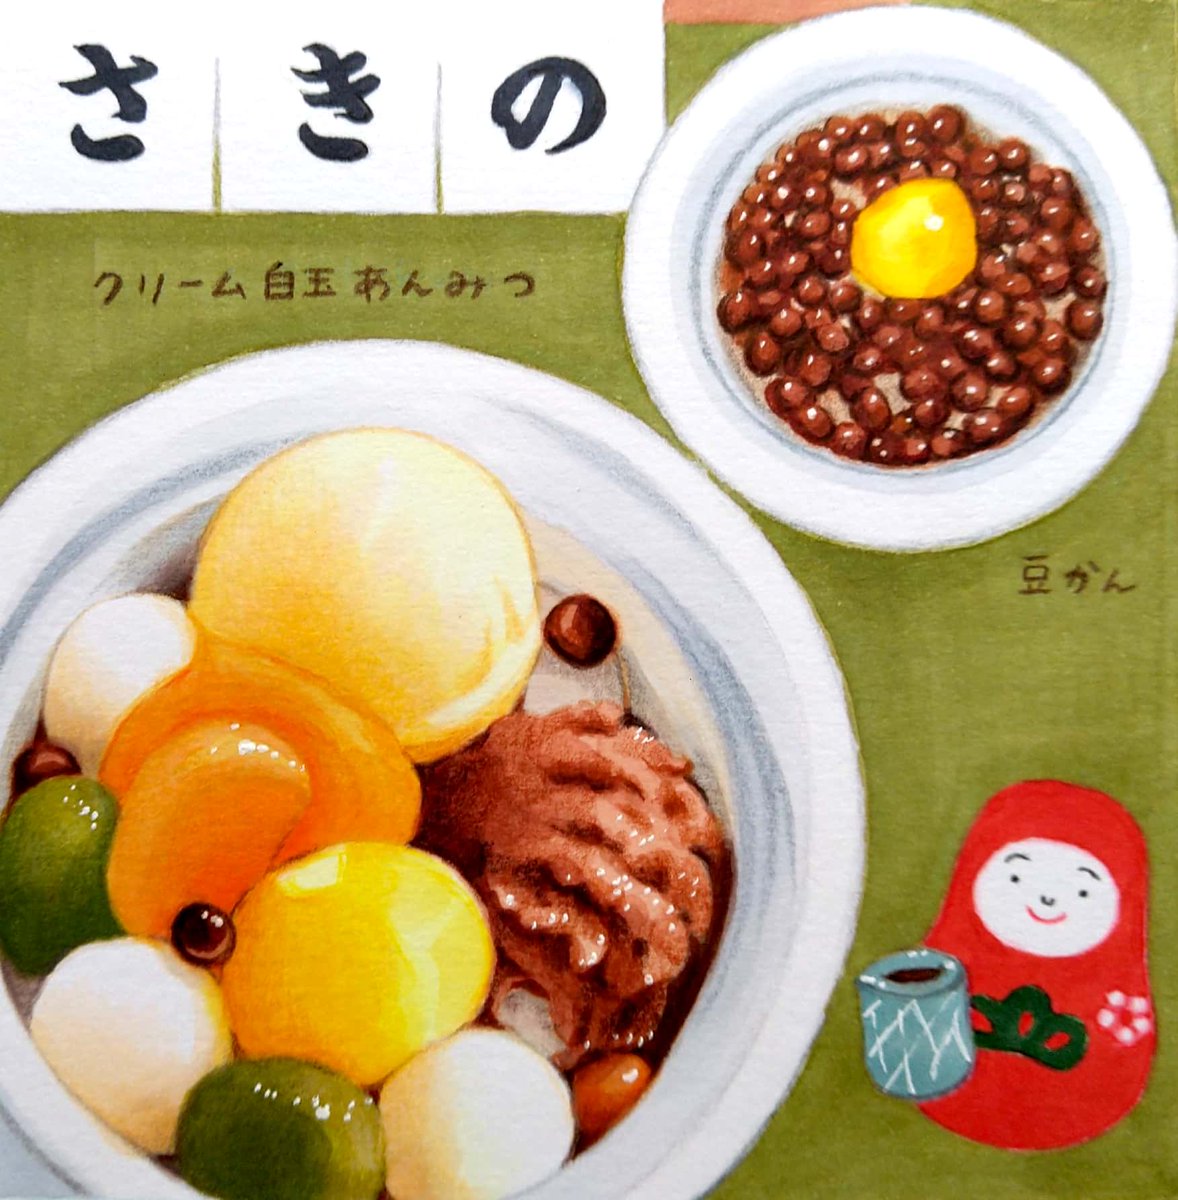 札幌市円山エリアにあるあんみつ専門店「あんみつ さきの」さん。素材一つ一つが上質なクリーム白玉あんみつ。十勝産赤えんどう豆たっぷりの豆かん。鋭く角が立ち、さっくりとした食感の寒天に魅了されました。 #田島ハルのくいしん簿